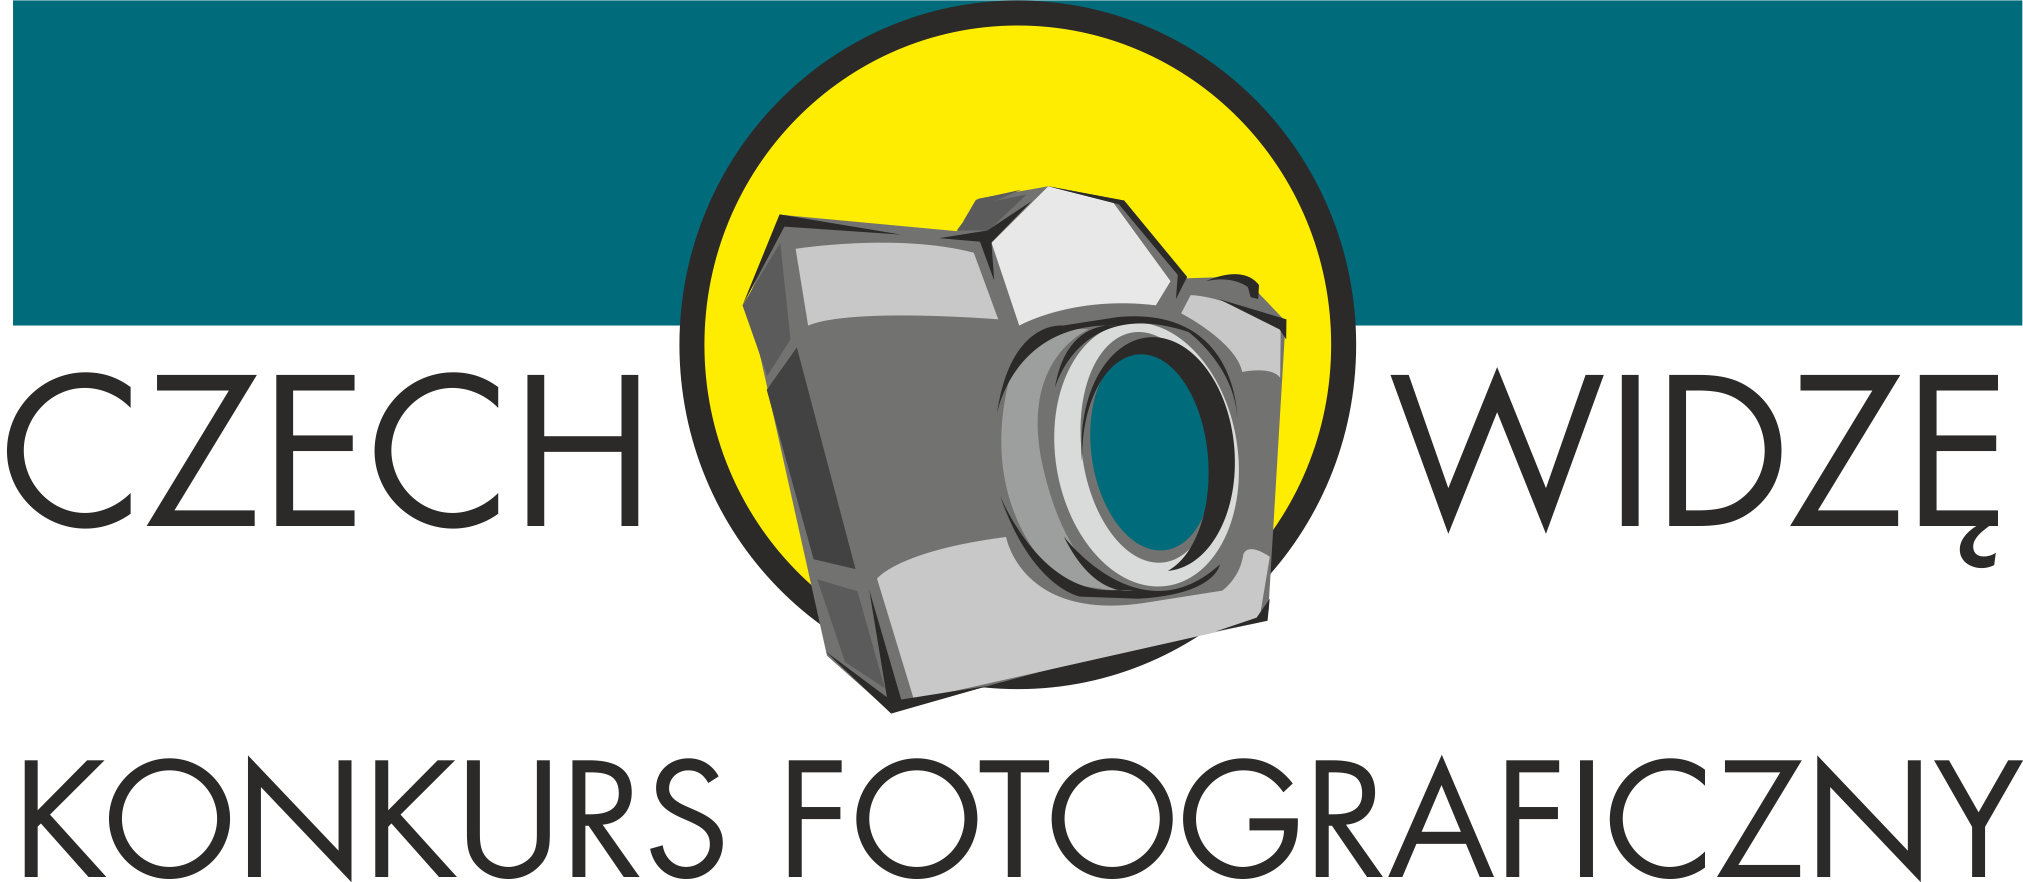 CzechoWIDZĘ Logo konkurs fotograficzny